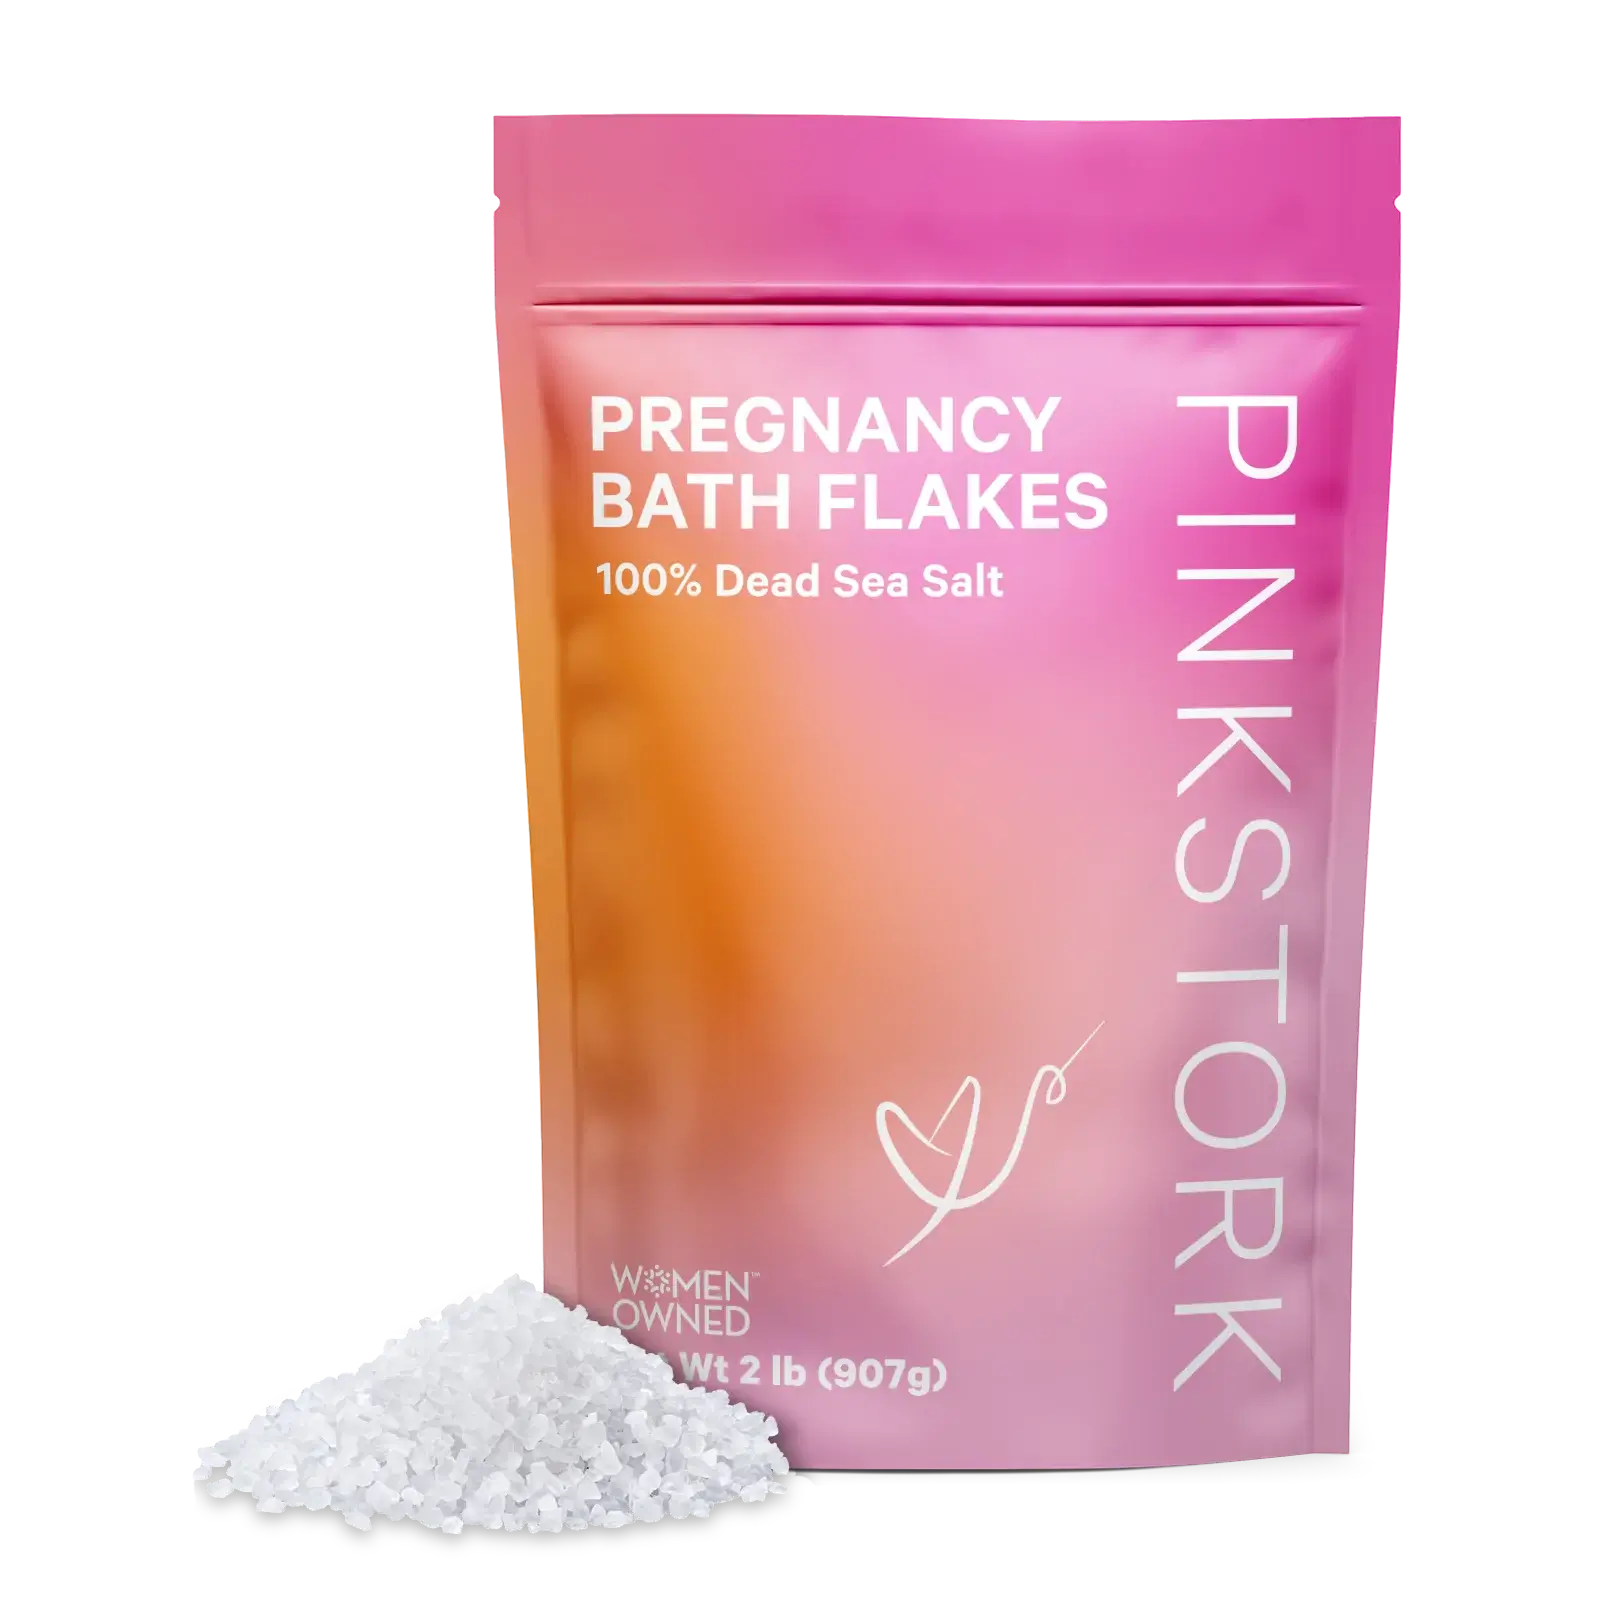 Baths in pregnancy